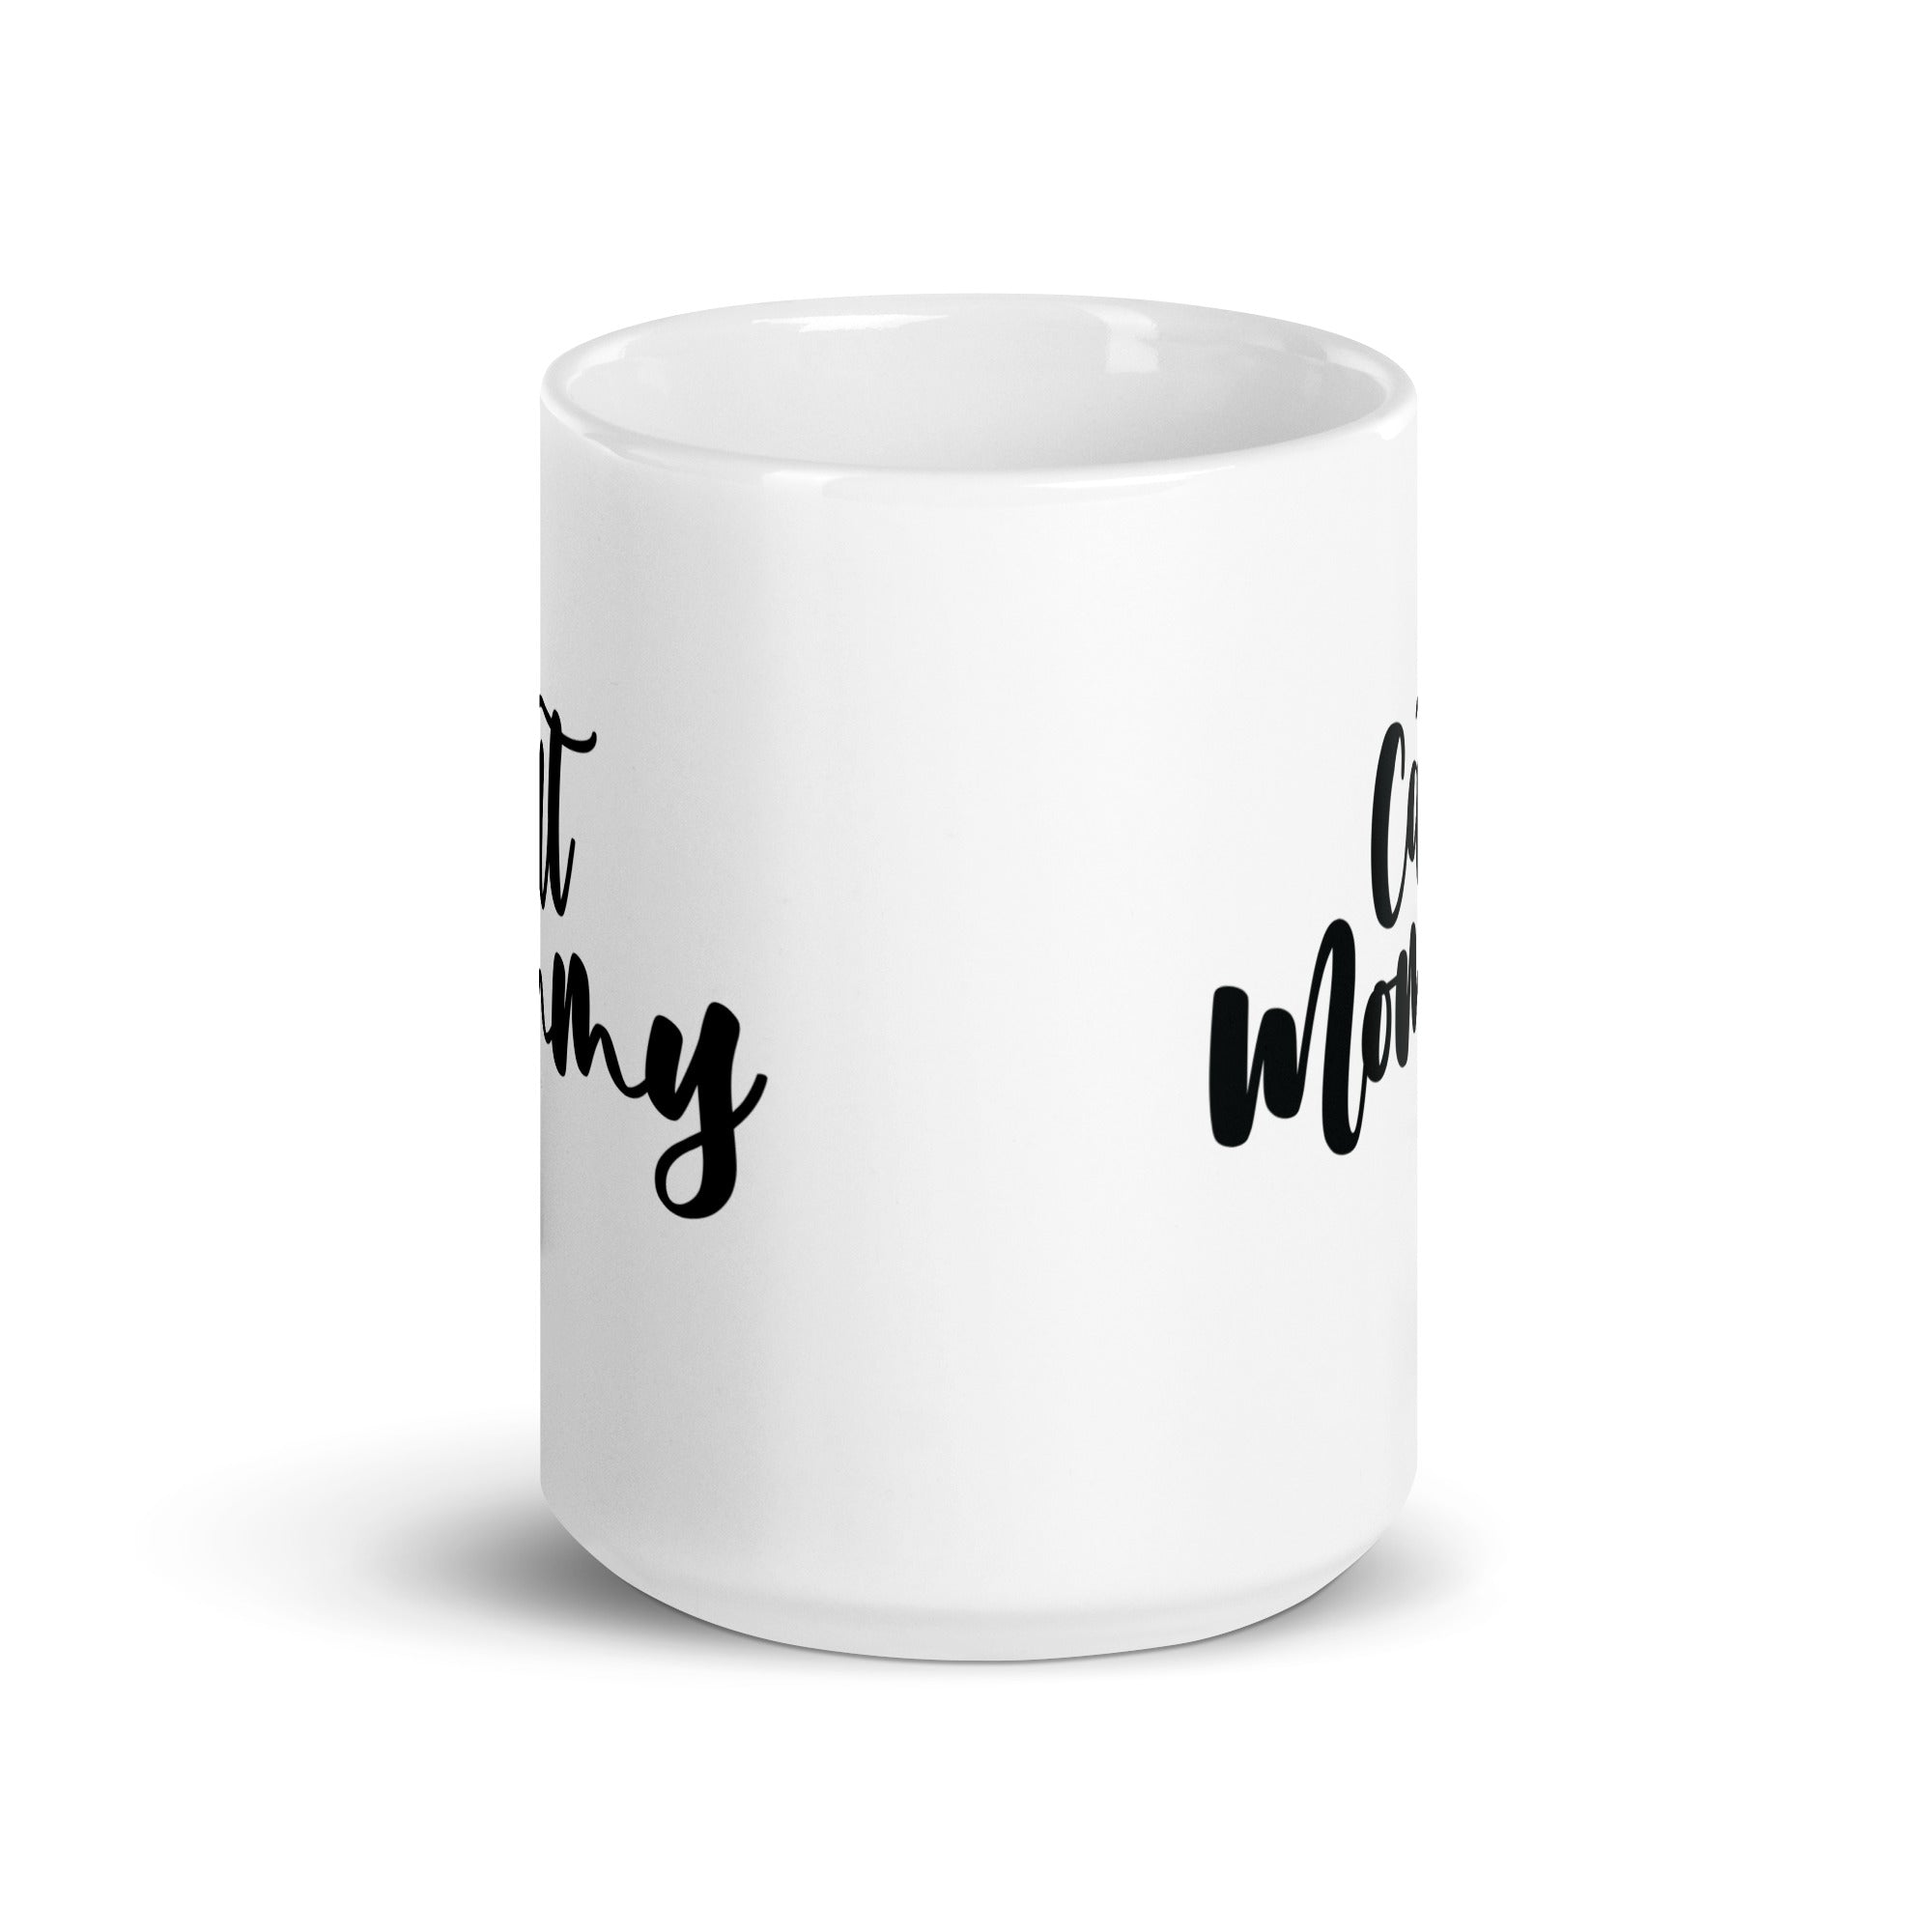 White glossy mug | Cat Mommy